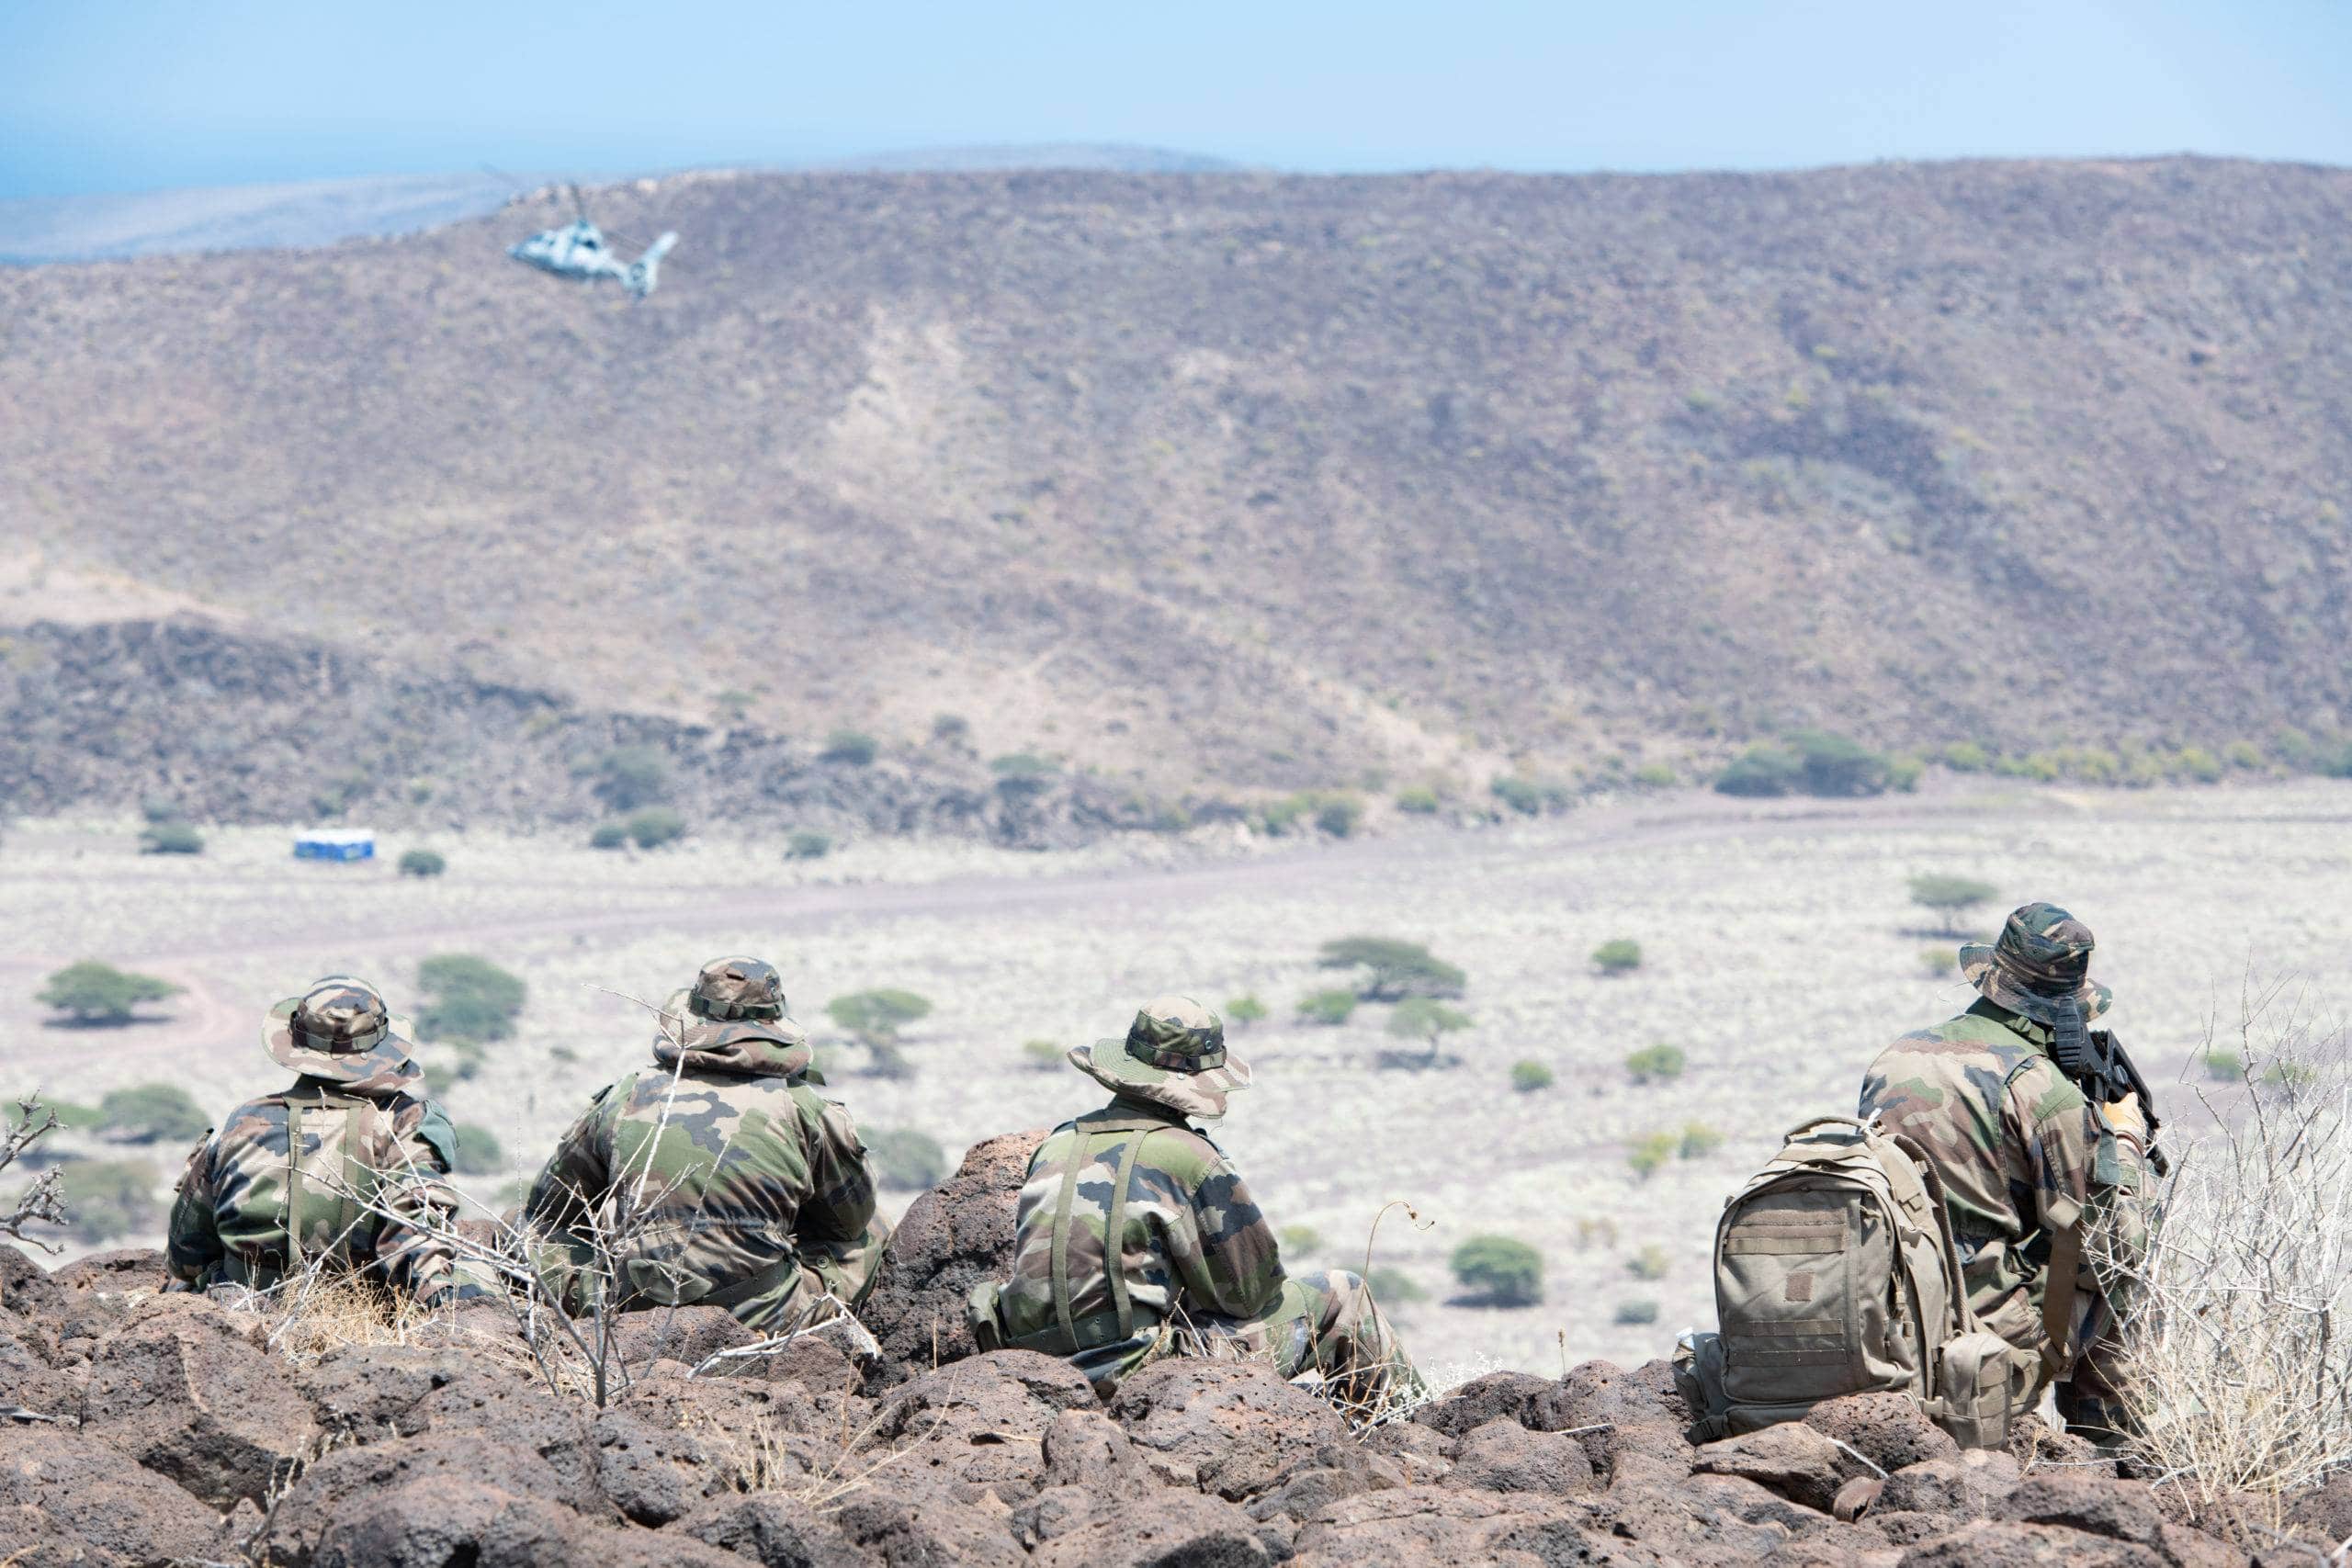 Du 10 au 12 mars 2021, les ofiiciers élèves et leurs cadres sont projetés à terre à Arta, Djibouti dans le cadre de l'exercice de Manoeuvres Tactiques d'Infanterie Avancées (MTIA).